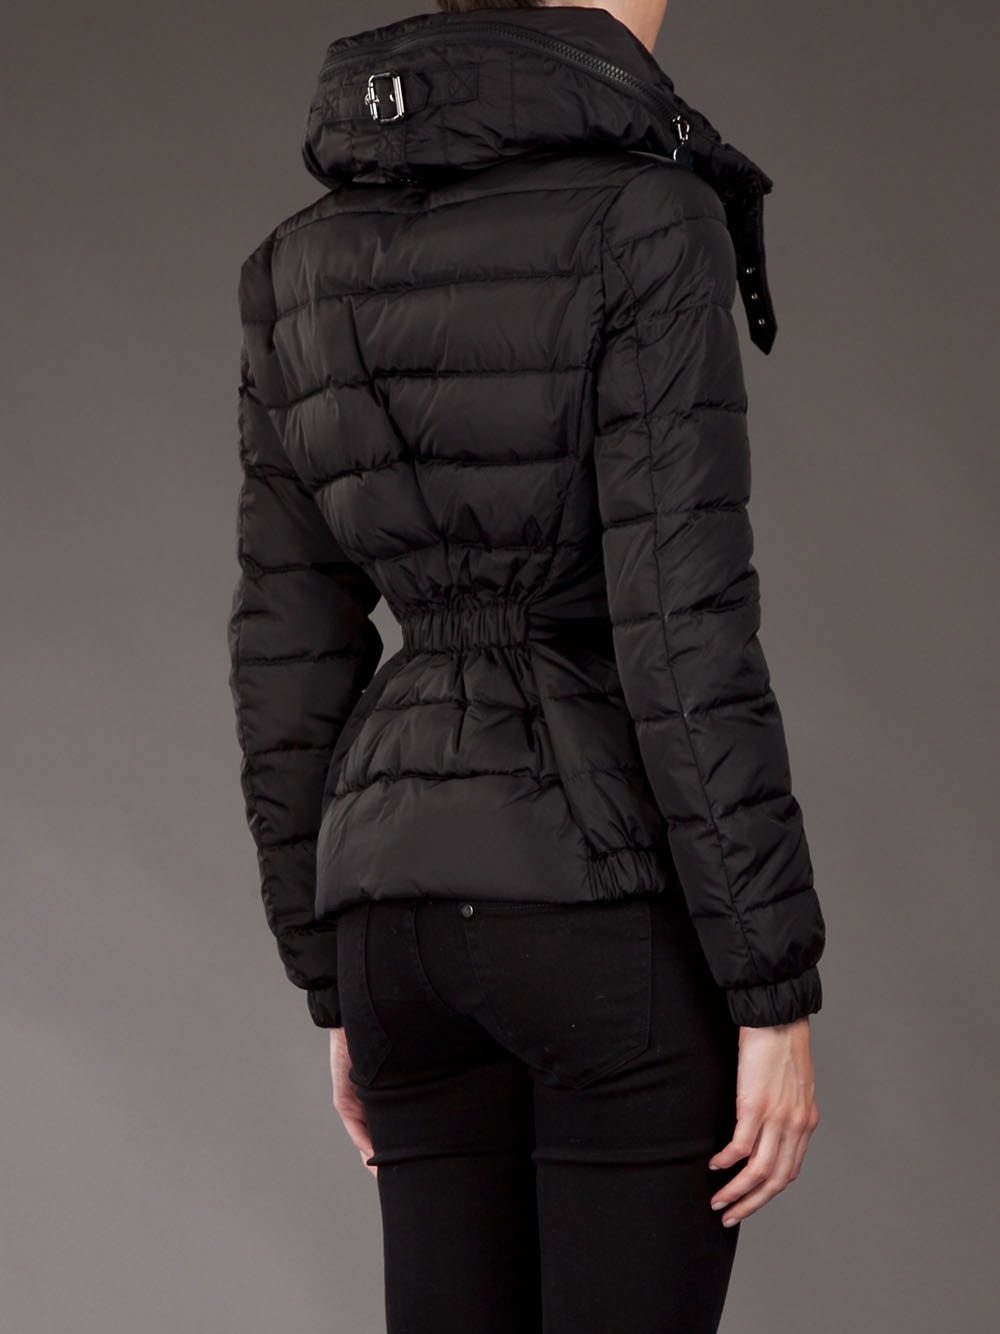 Moncler Epine Jacket in Black - Lyst